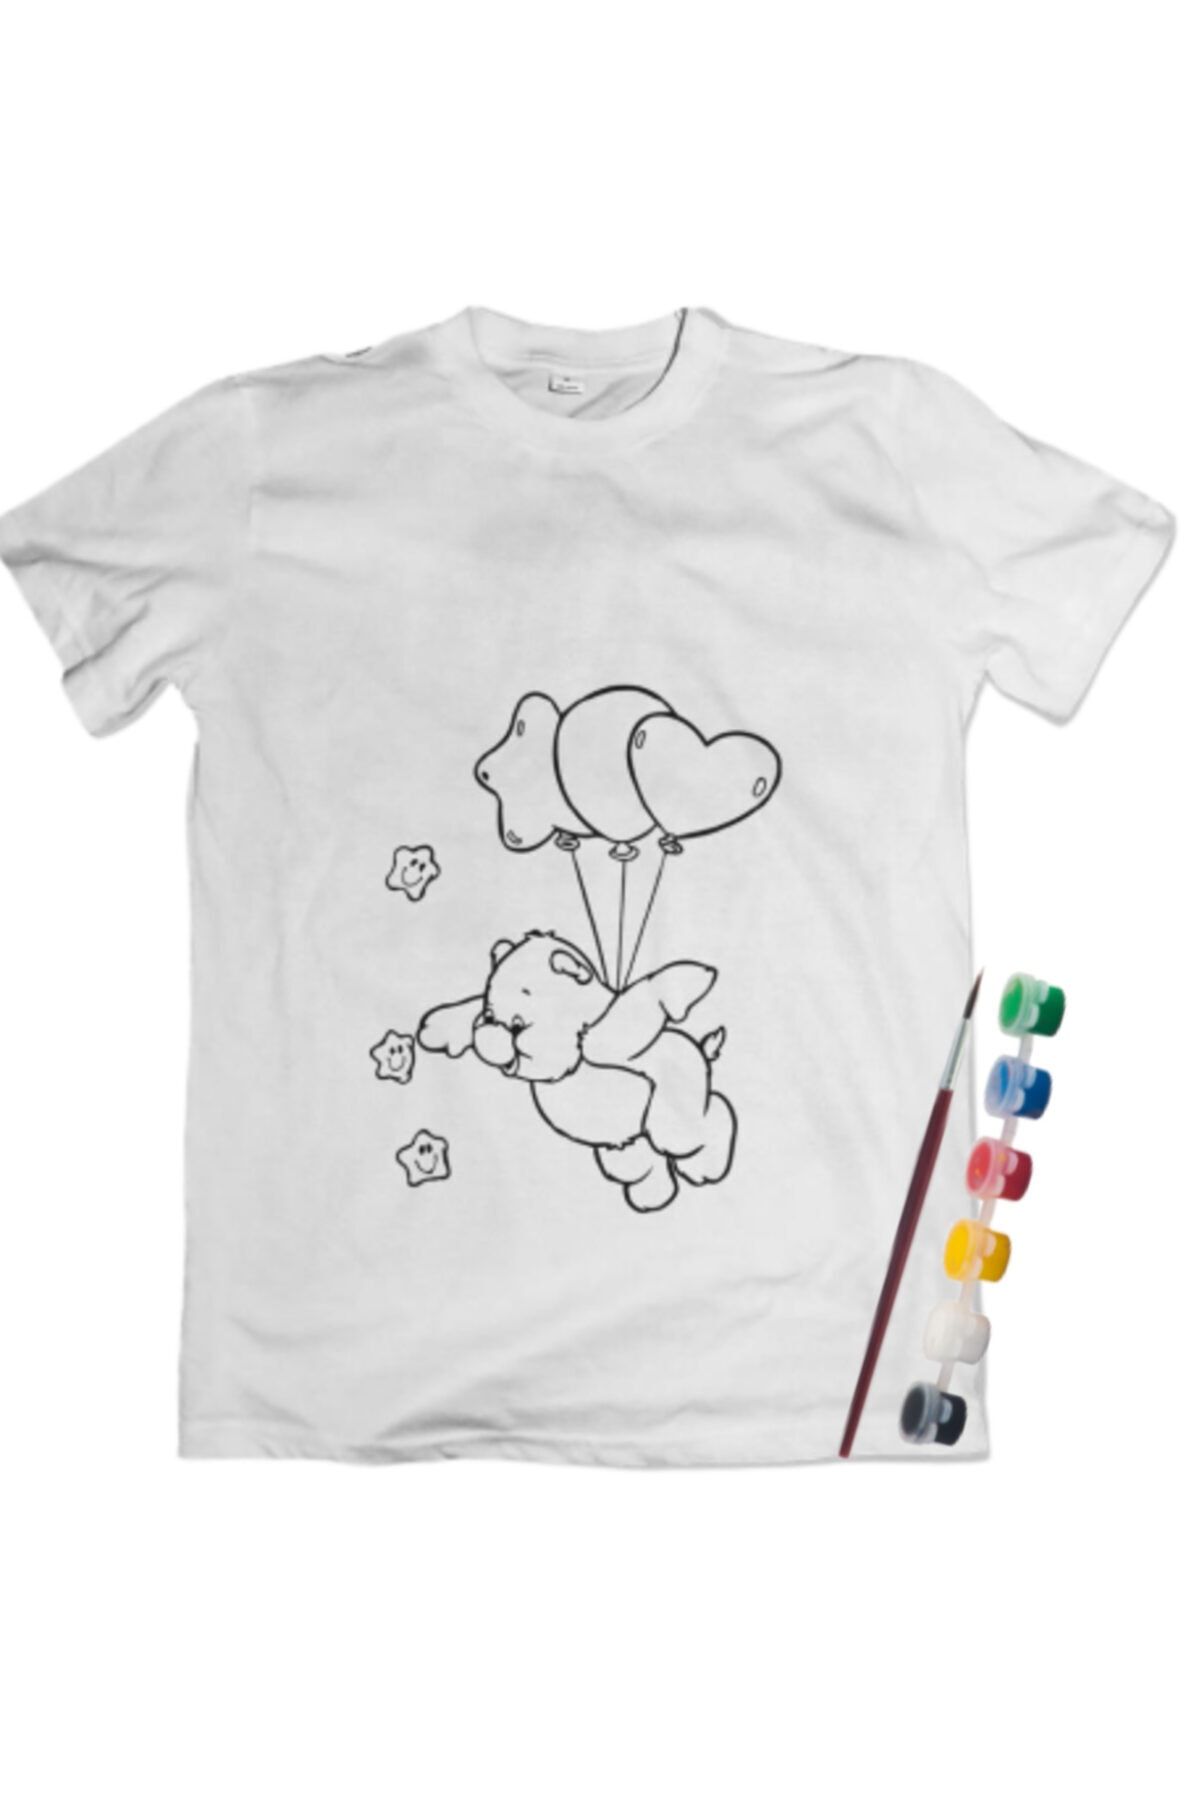 Joy and Toys Uçan Ayı Desenli T-shirt Boyama Seti 8-9 Yaş Çocuk Aktivite